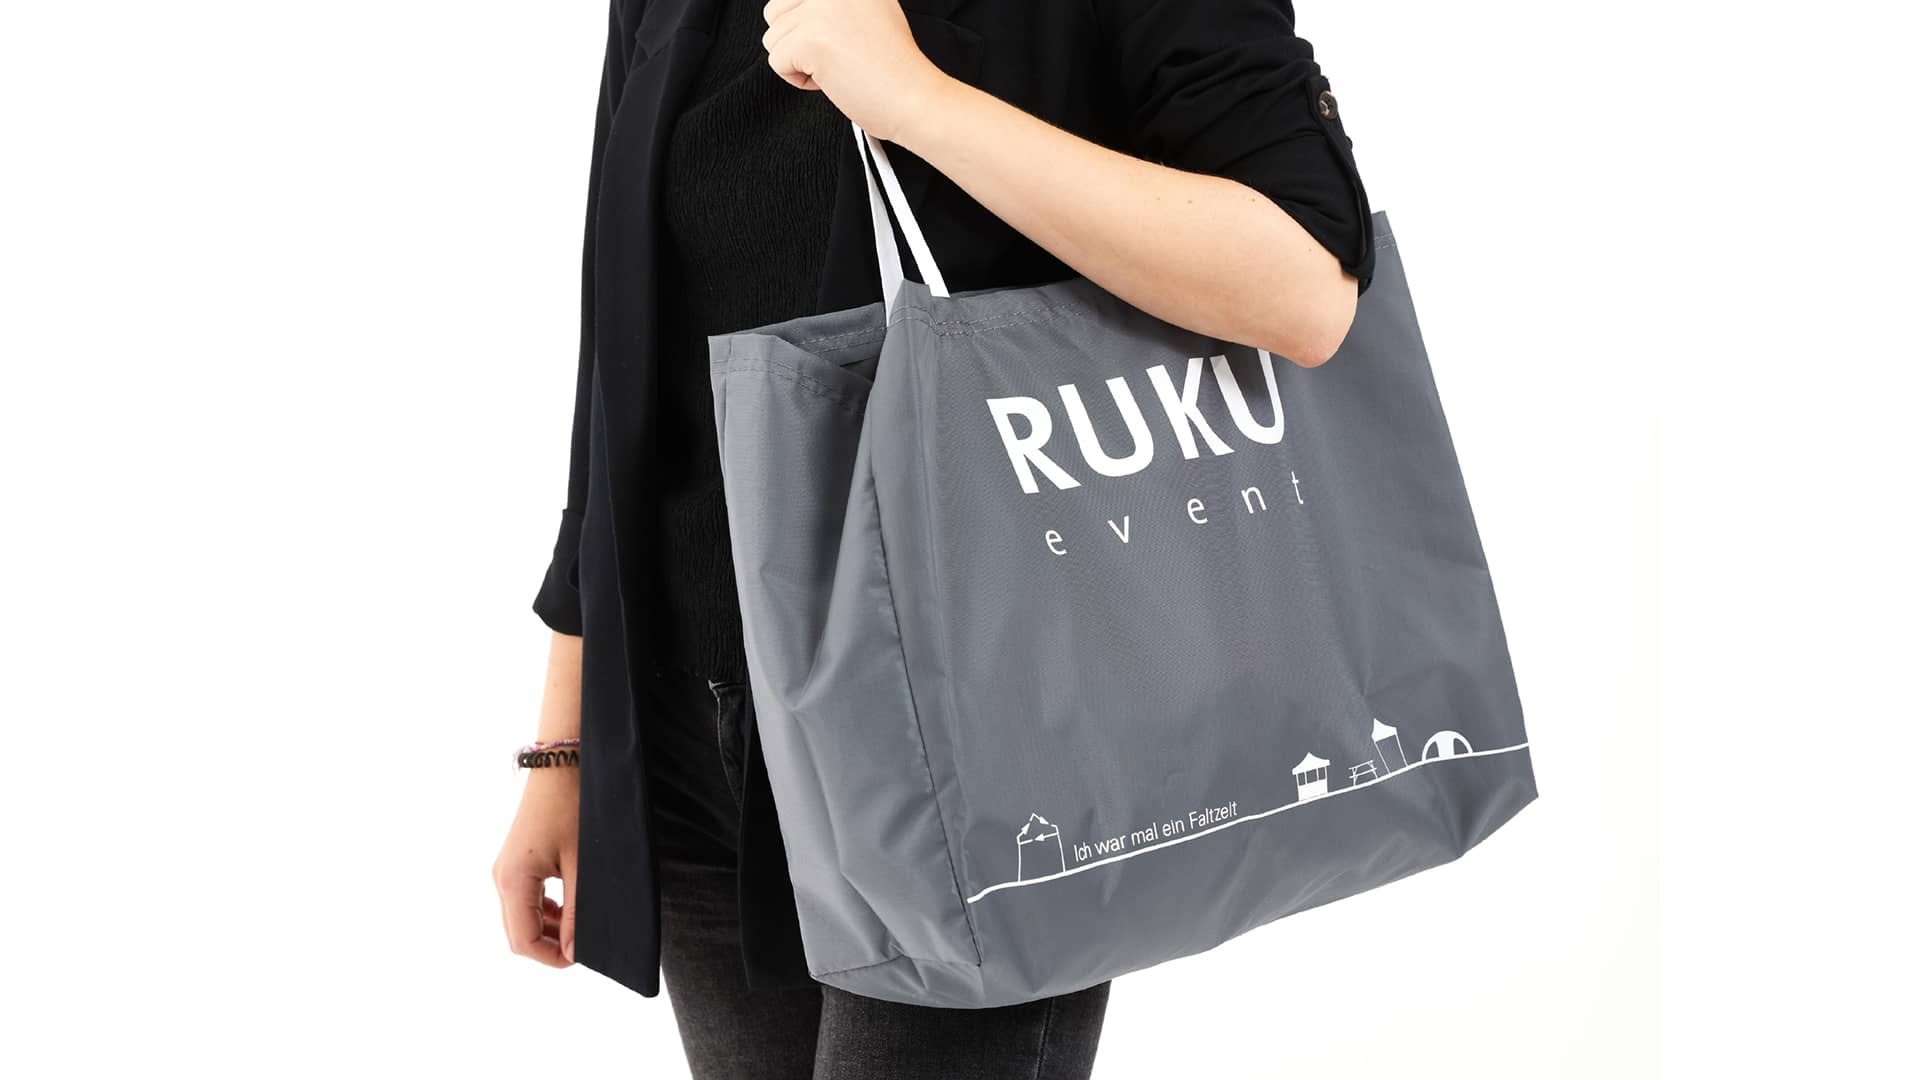 Die nachhaltige RUKUevent Einkaufstasche in der Farbe dunkelgrau wird von einer Person um die Schulter getragen.